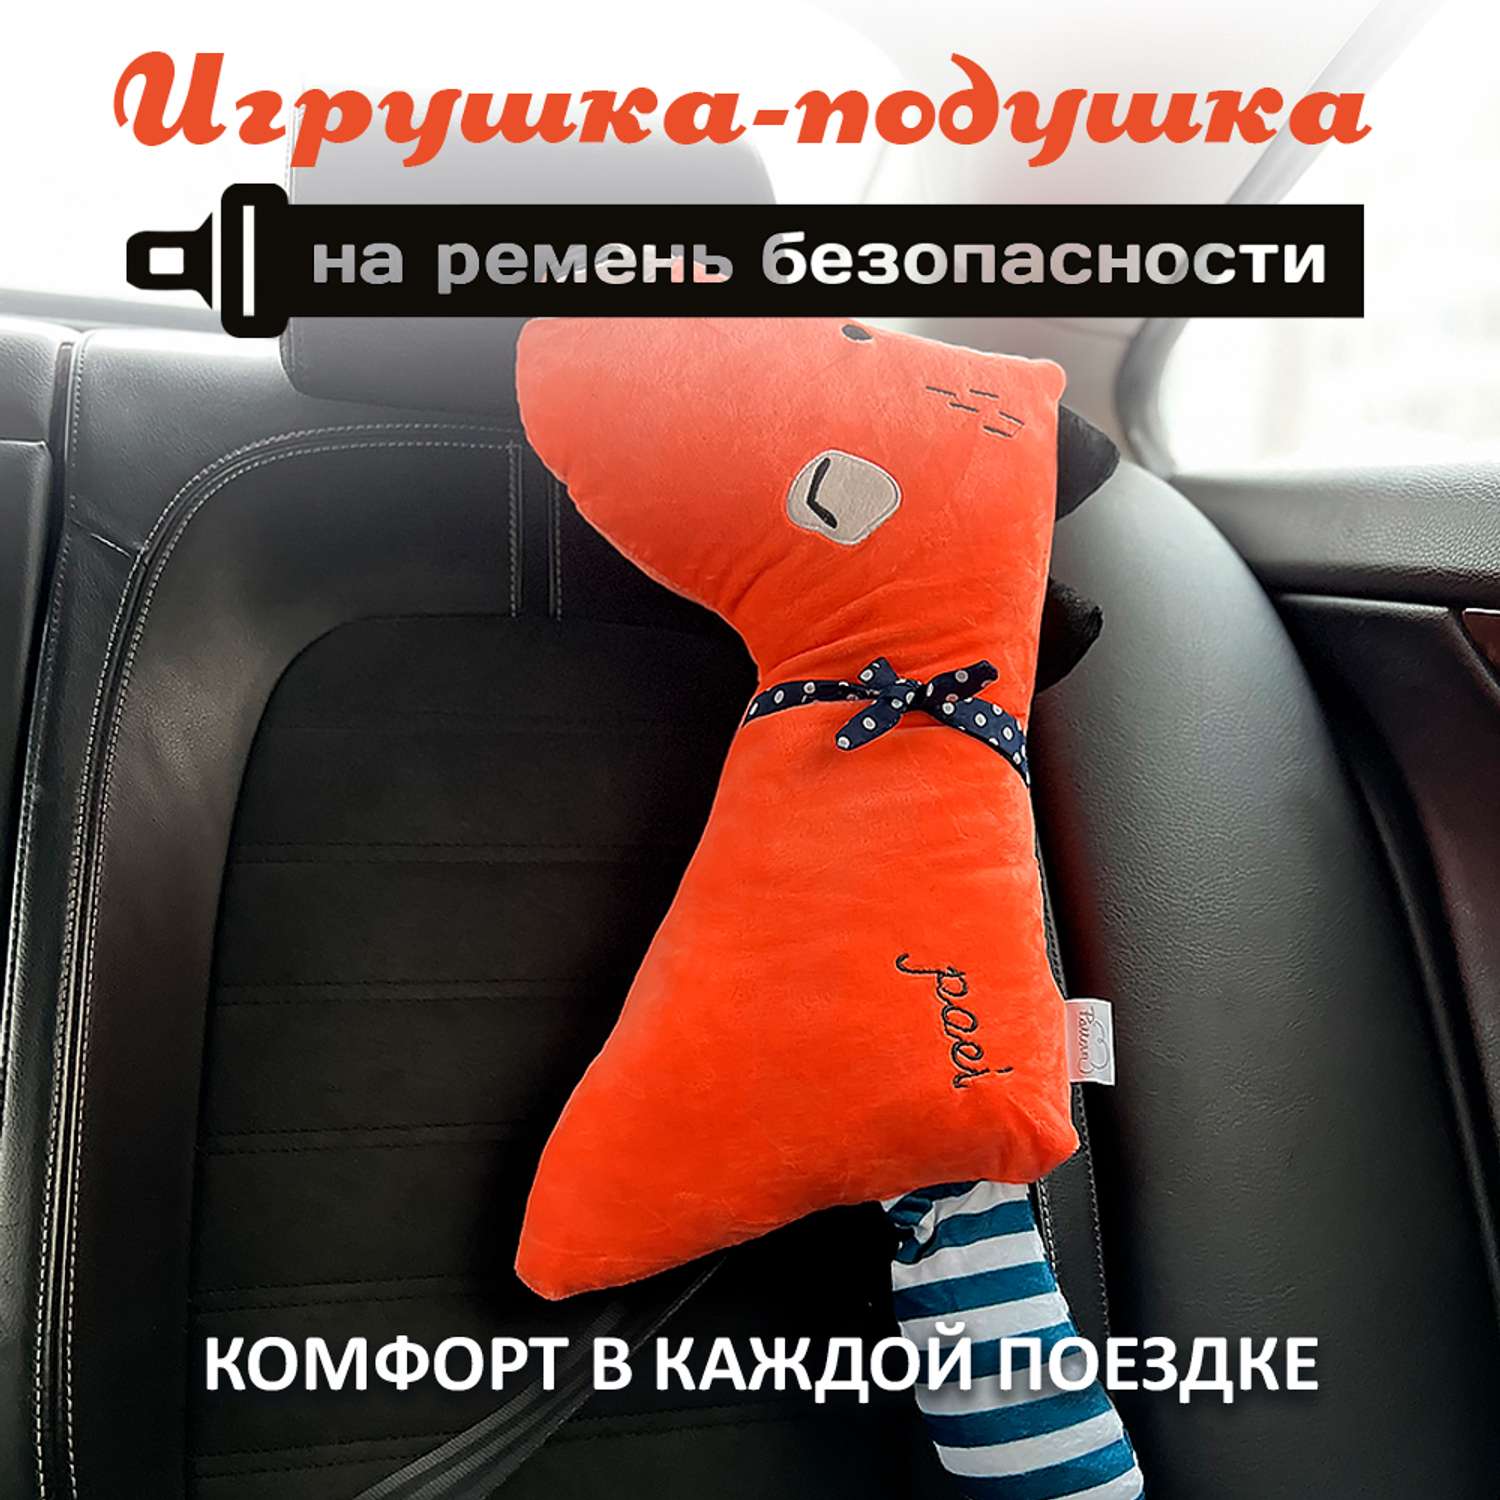 Подушка для путешествий Territory игрушка на ремень безопасности Рыжая лиса с бантиком - фото 2